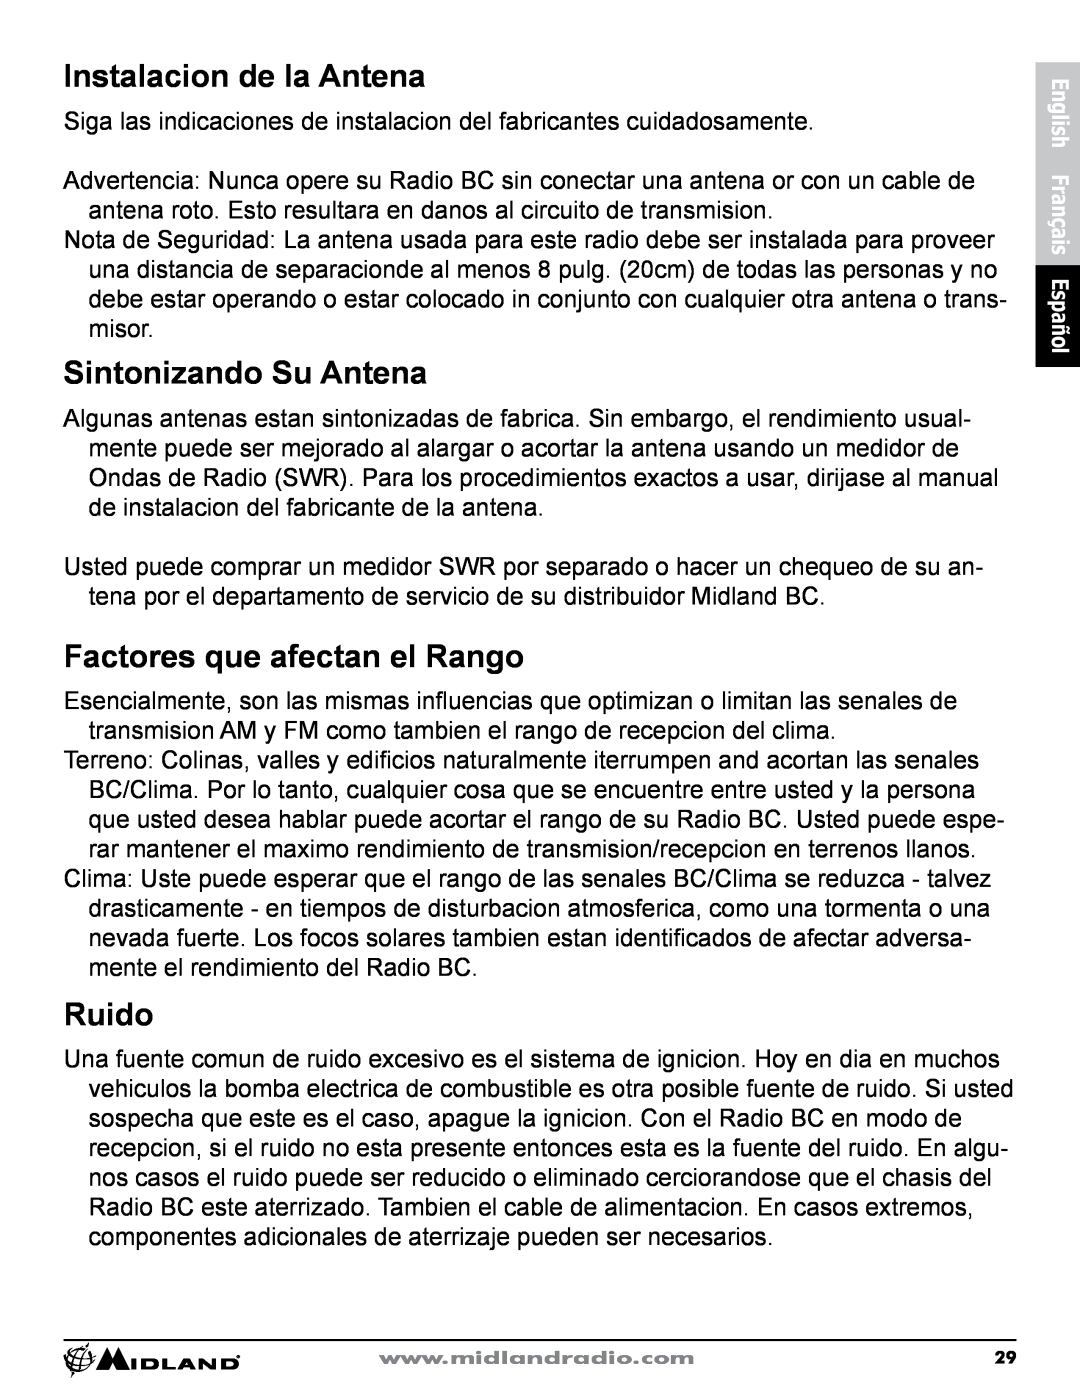 Midland Radio CB-1 owner manual Instalacion de la Antena, Sintonizando Su Antena, Factores que afectan el Rango, Ruido 